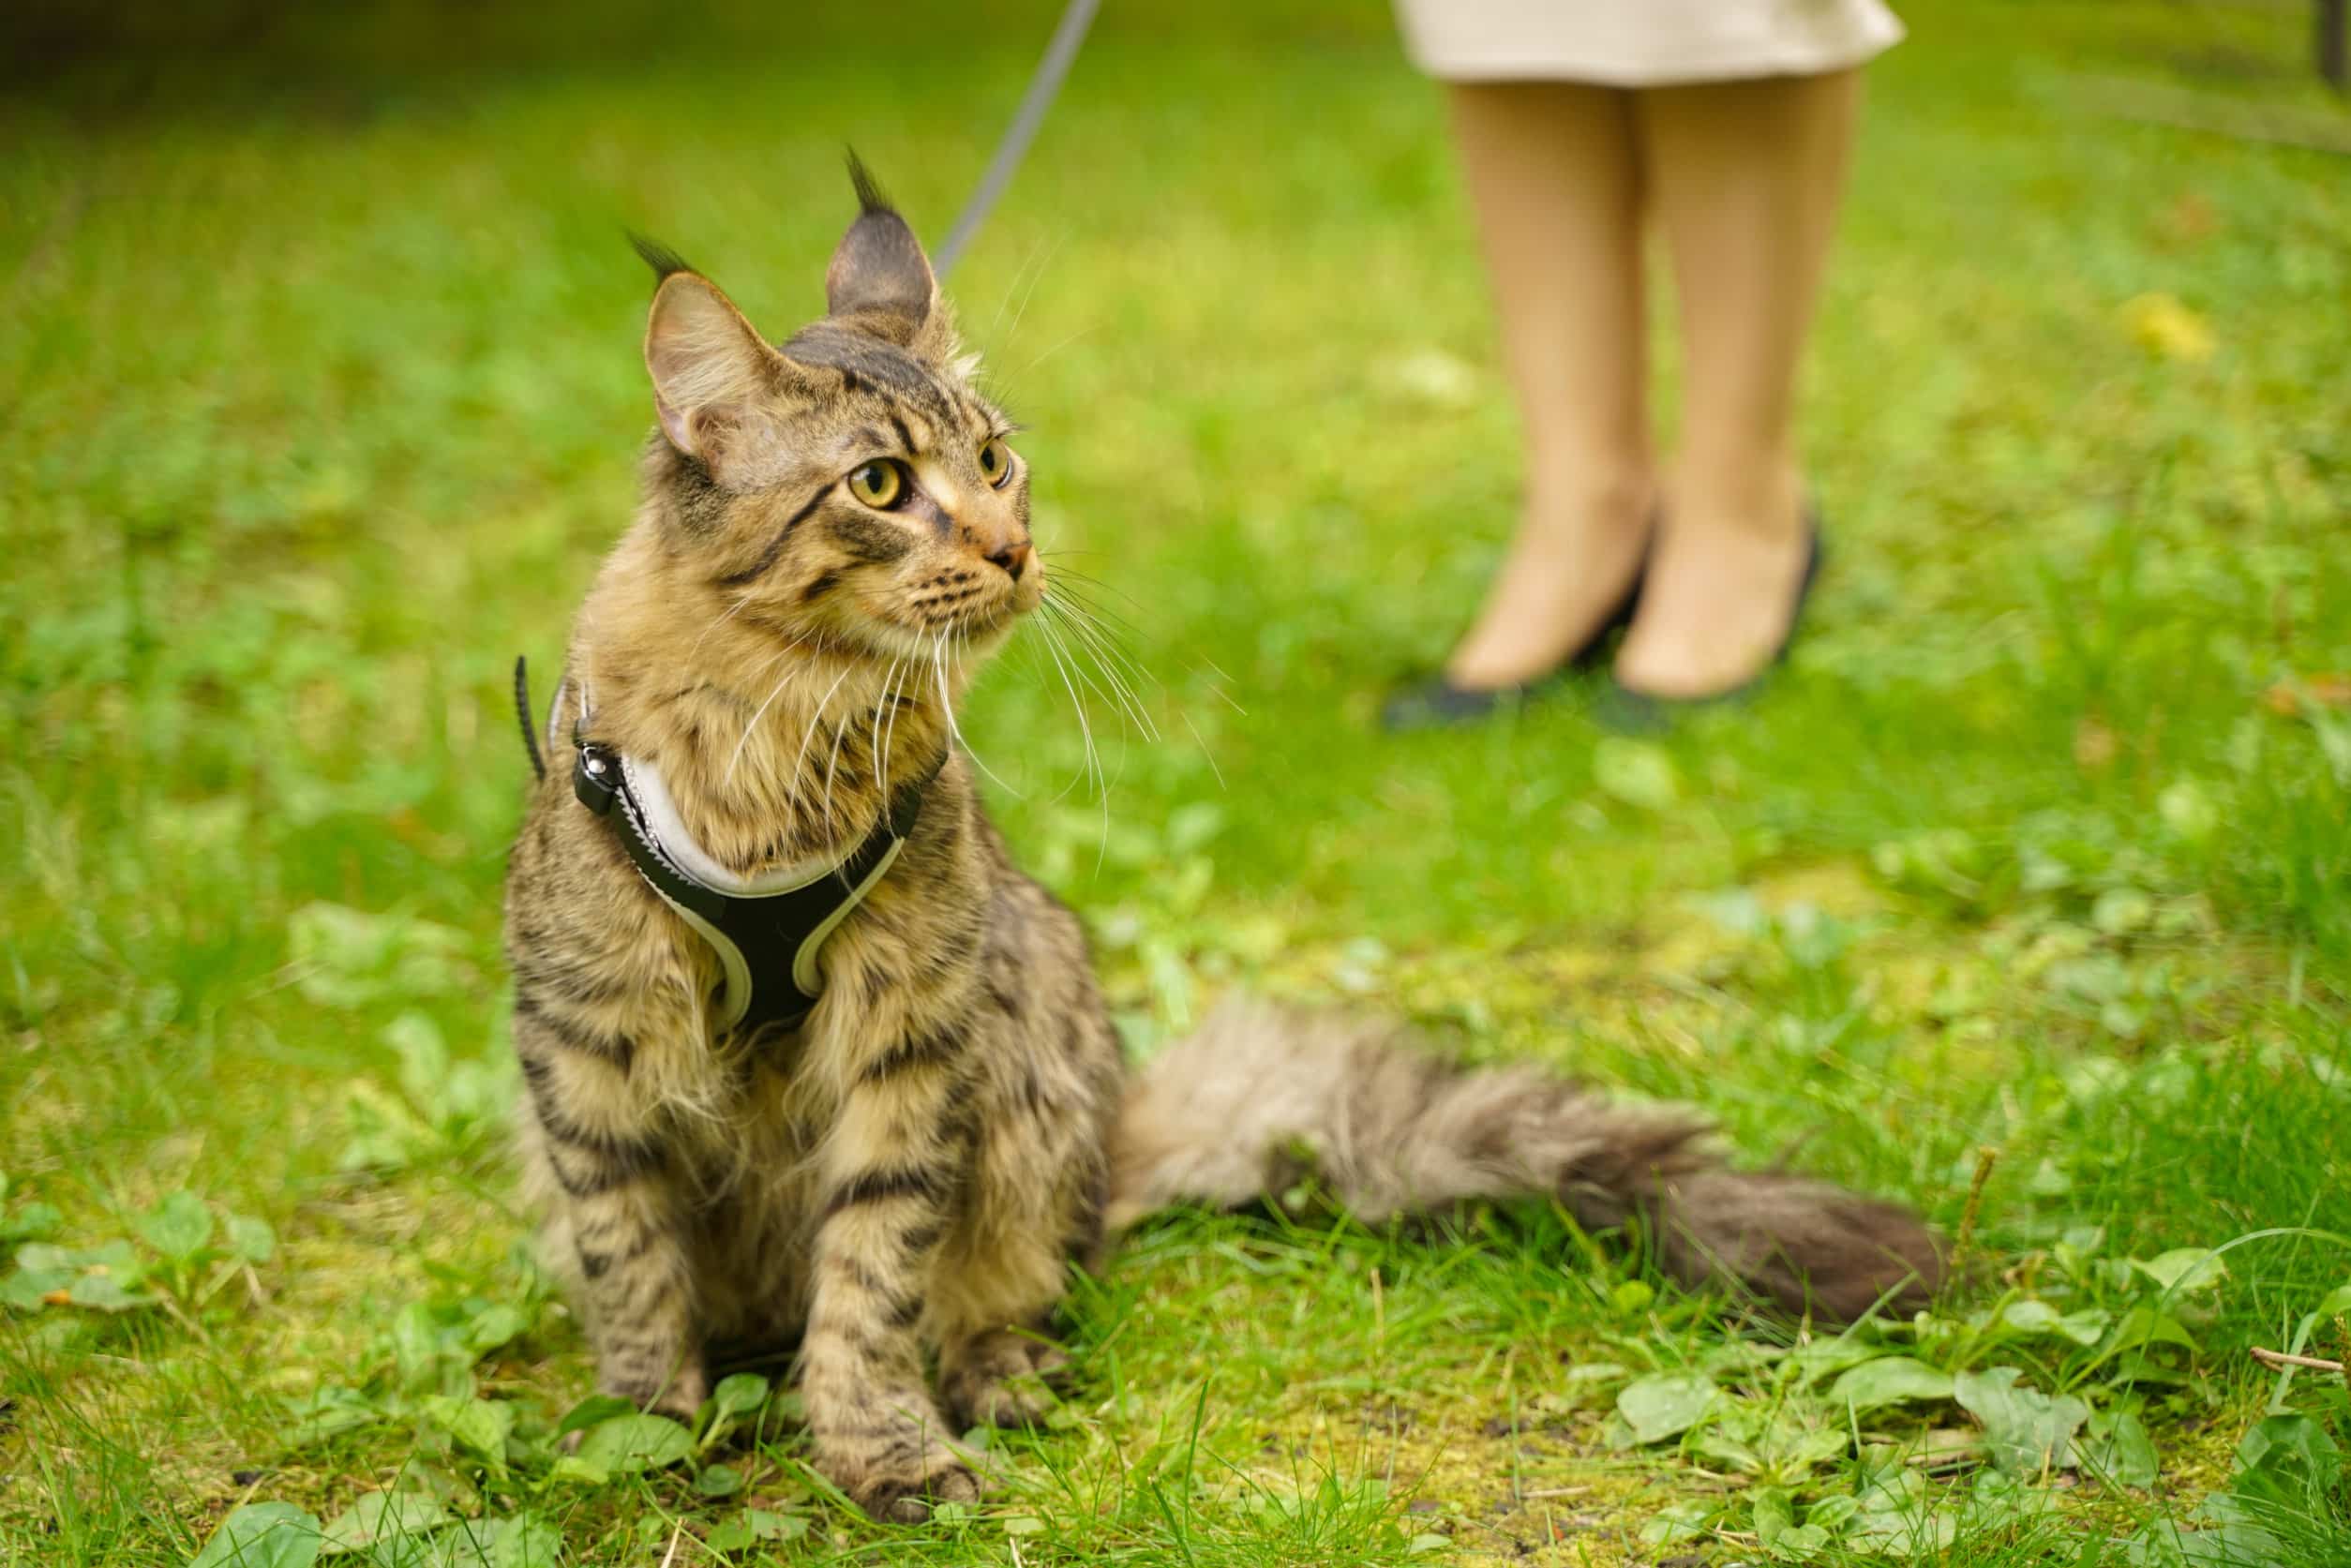 Découvrez comment mettre un harnais à un chat - Chatounette